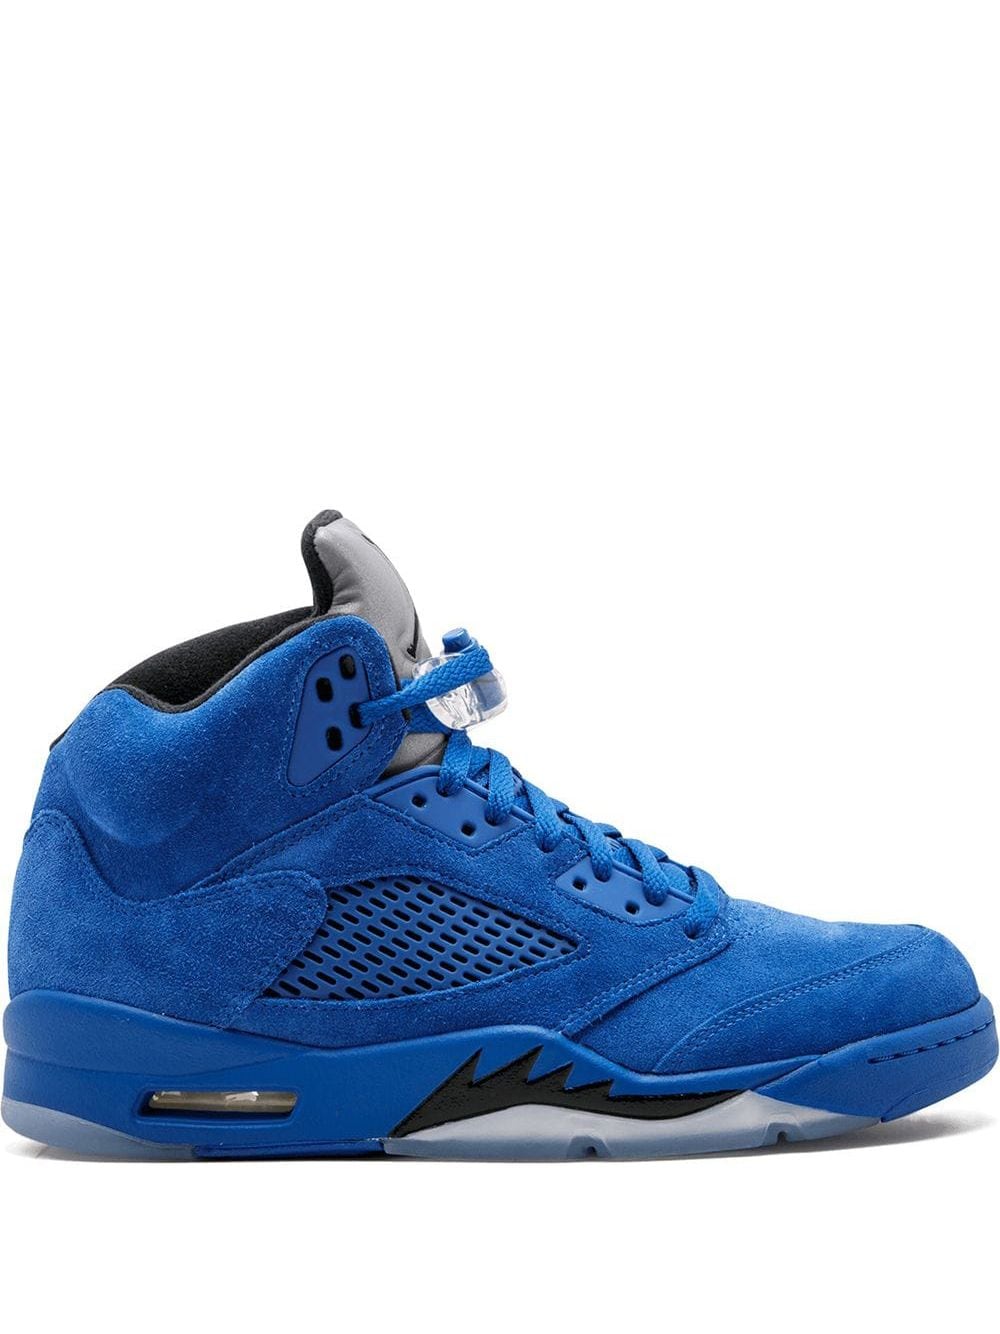 Image 1 of Jordan Air Jordan 5 Retro "Blue Suede" sneakers